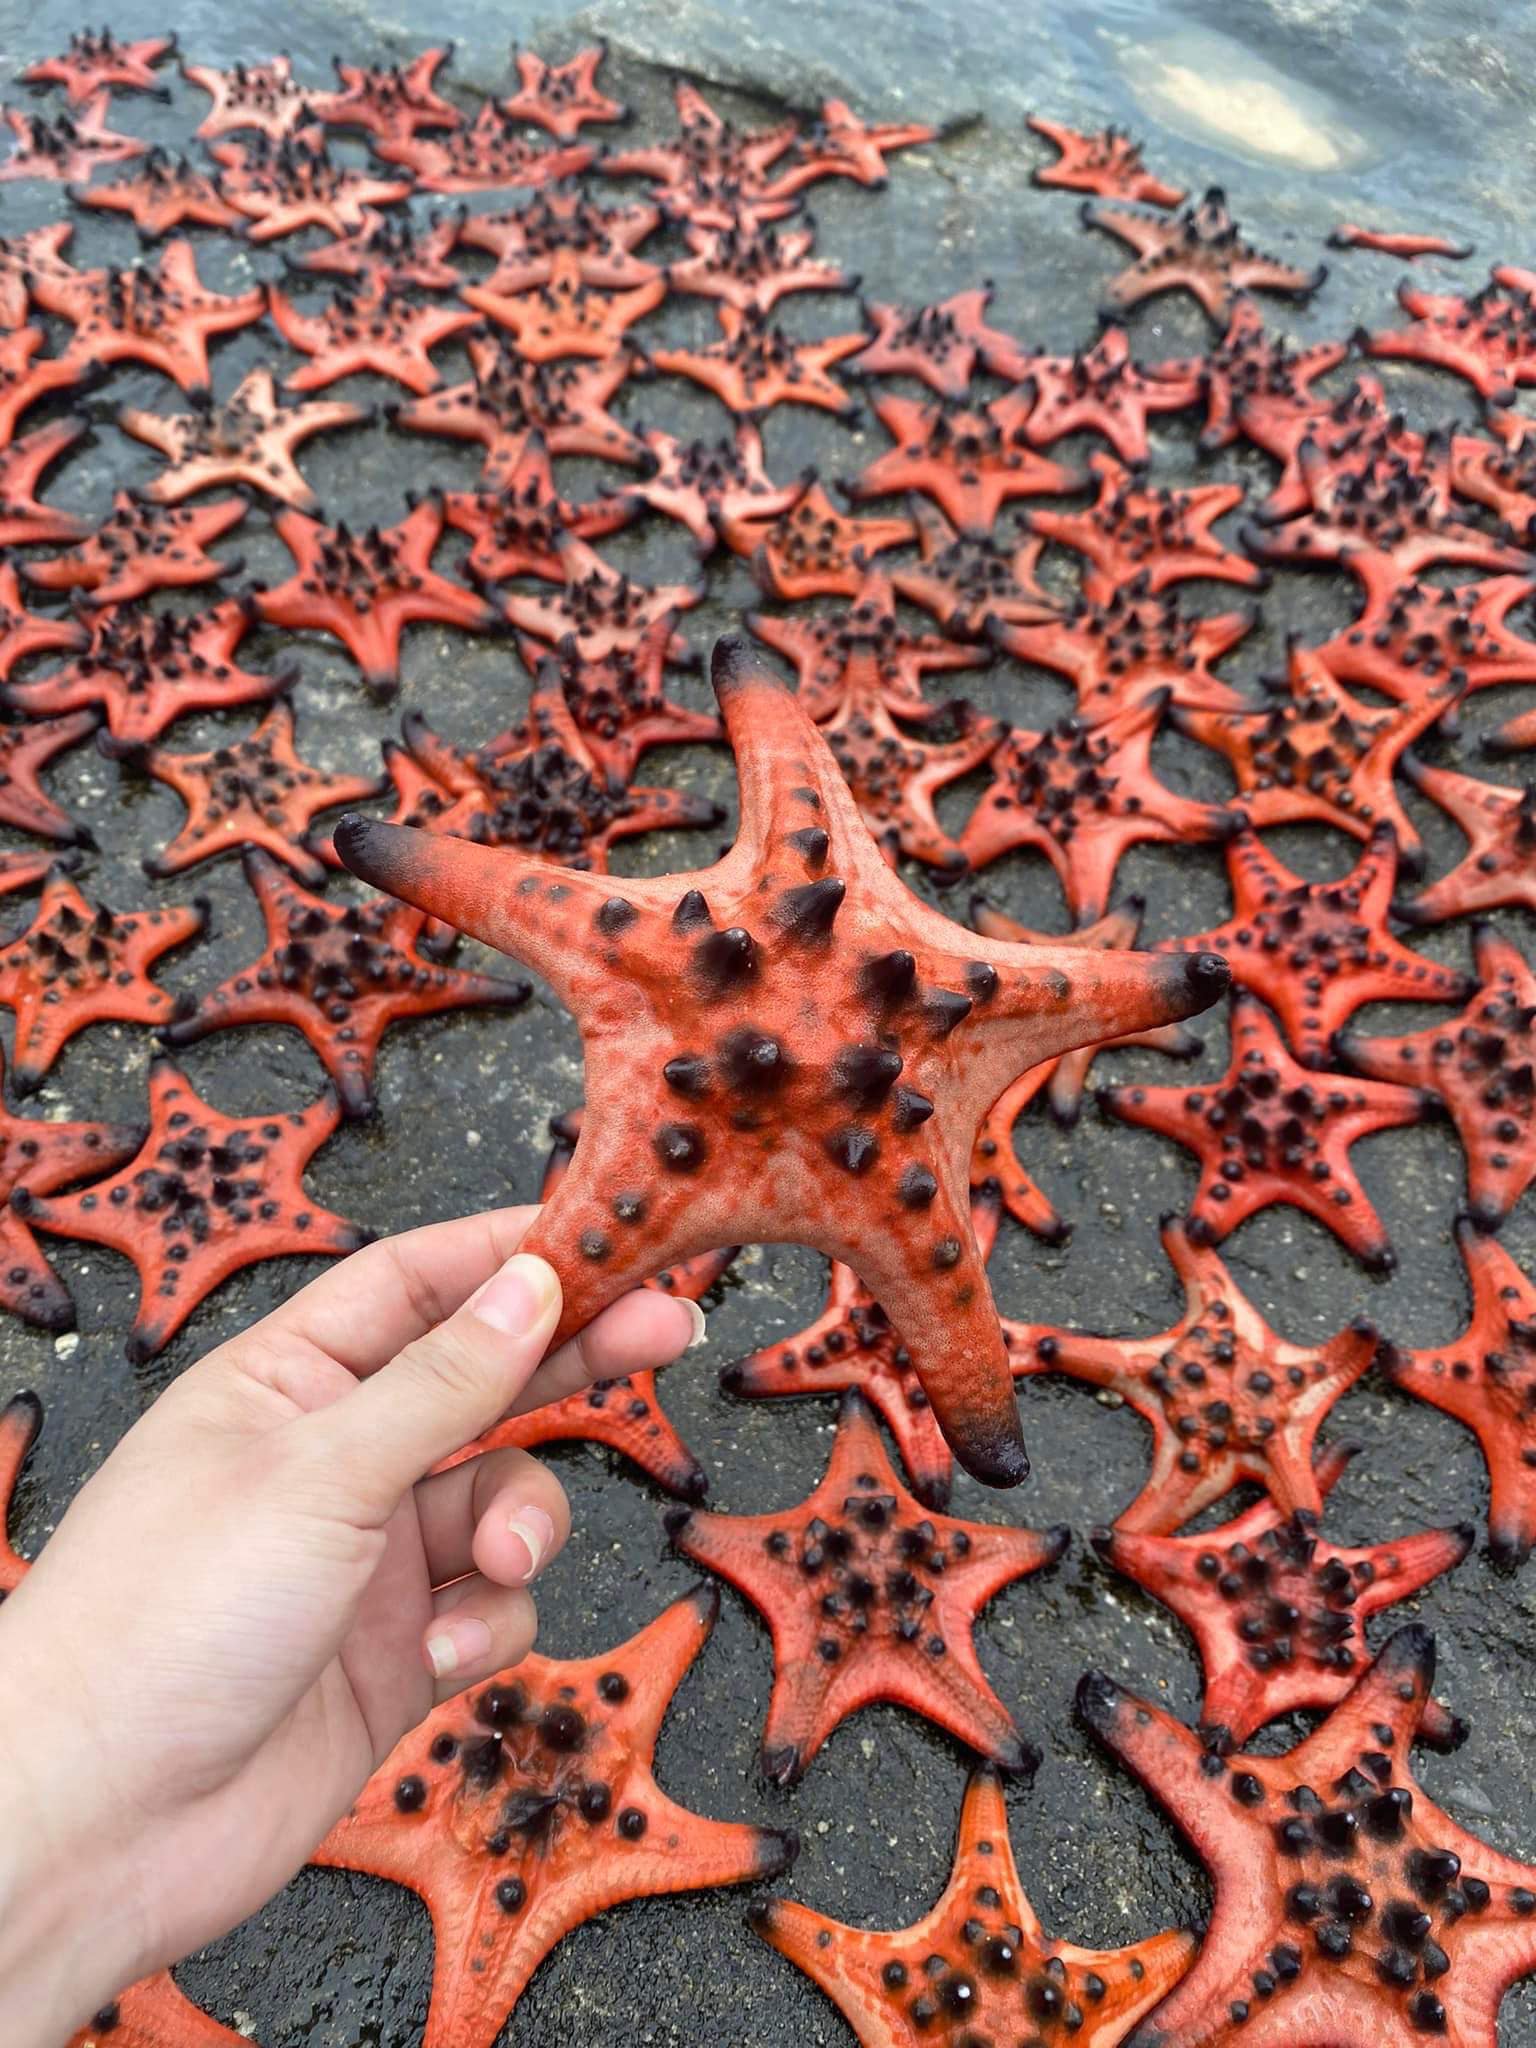 Cư dân mạng phẫn nộ trước hình ảnh hơn 100 con sao biển bị phơi trên đá để du khách "tự sướng" - Ảnh 1.